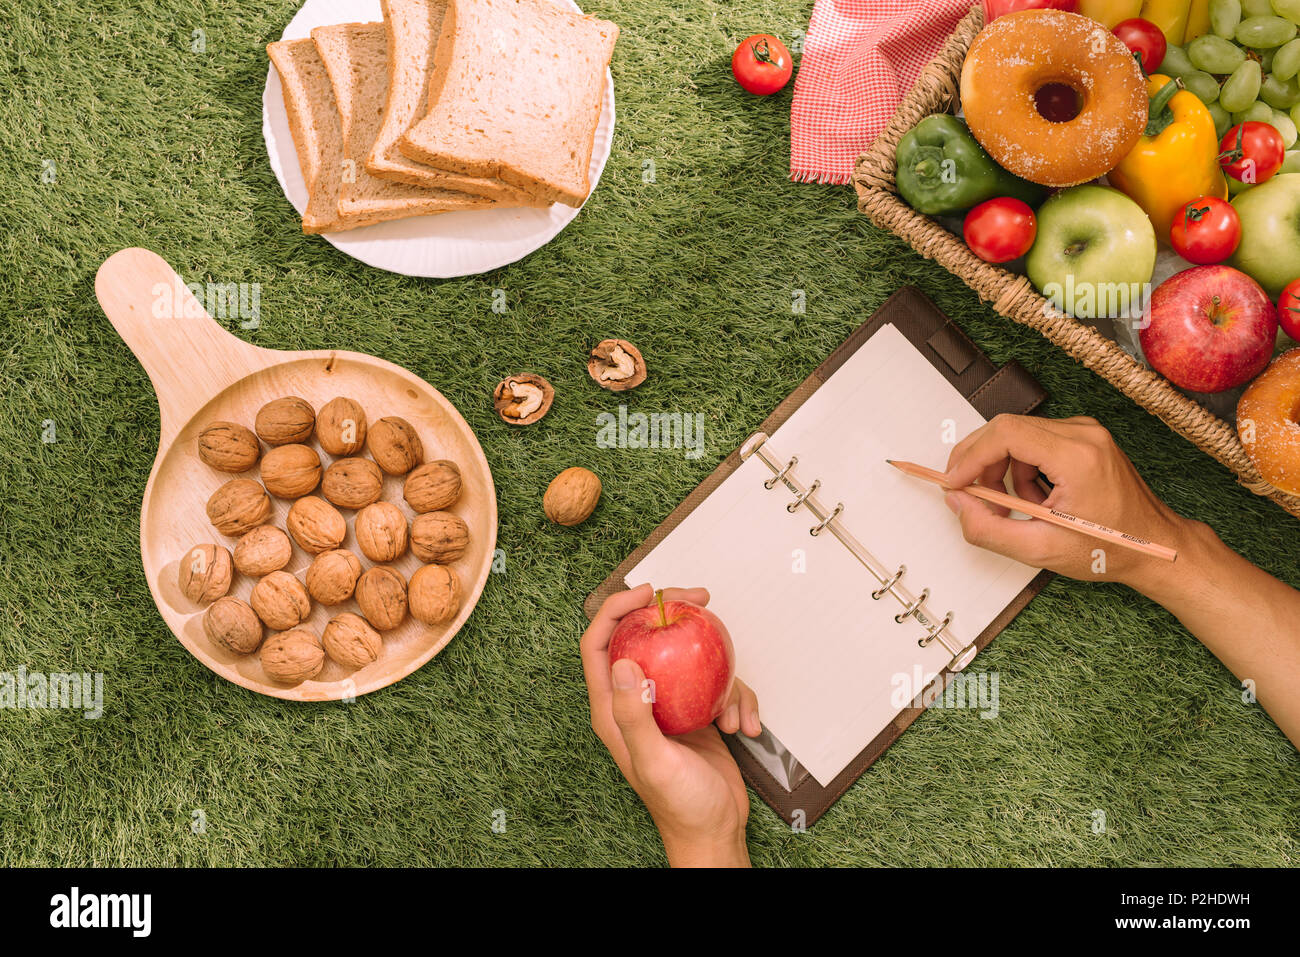 Picknick Weidenkorb mit Essen, Brot, Obst und Orangensaft auf einer rot-weiß karierten Tuch in das Feld mit der grünen Natur Hintergrund. Picknick conce Stockfoto